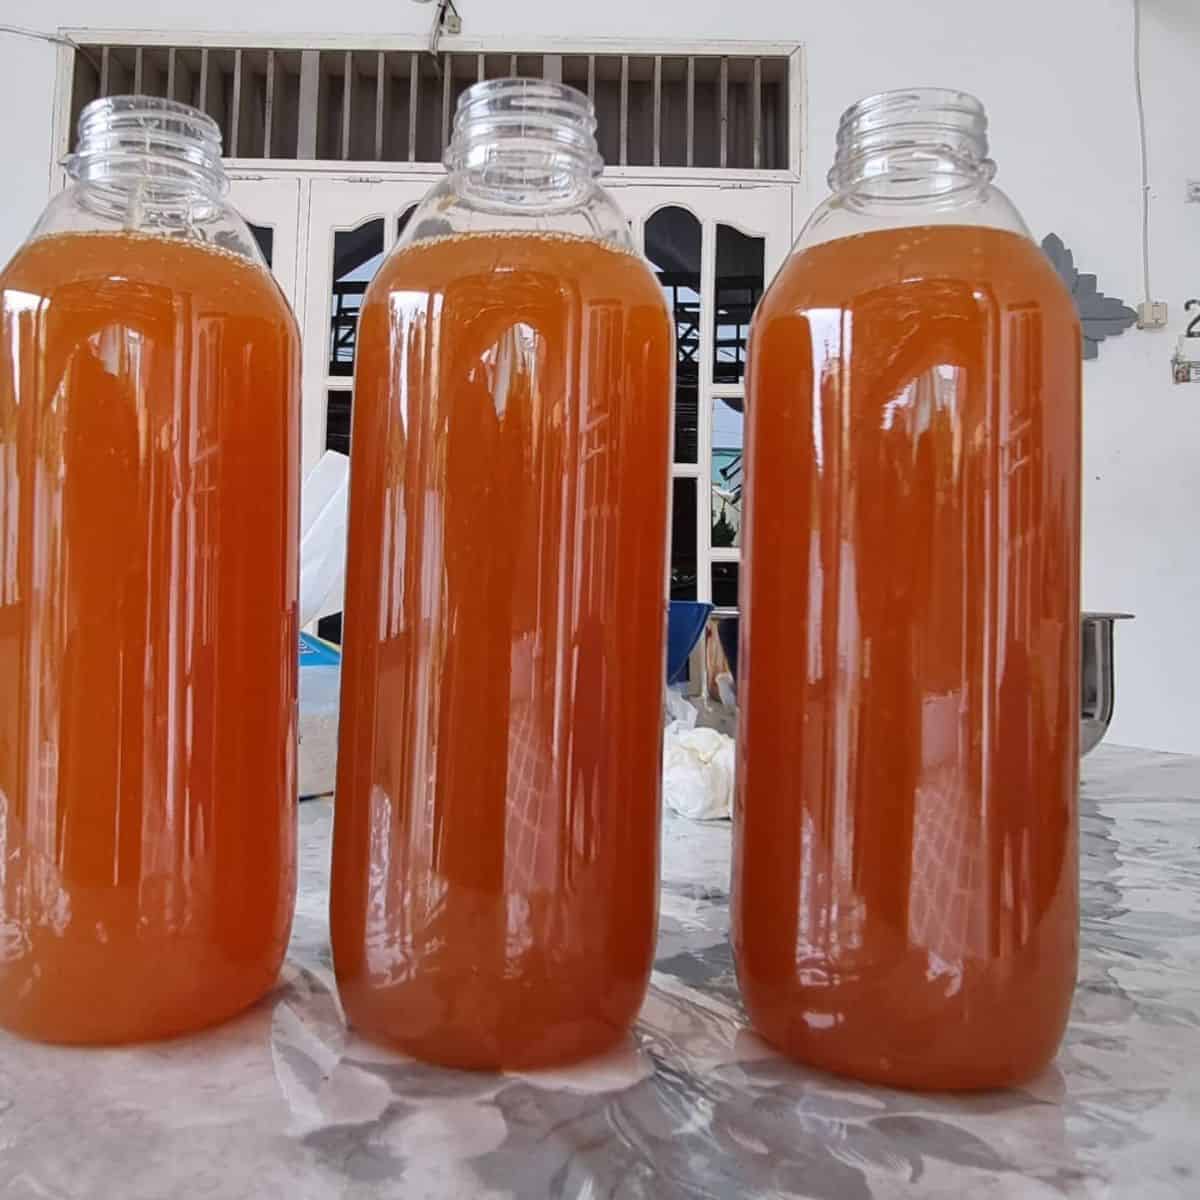 Three bottles containing dark orange liquid